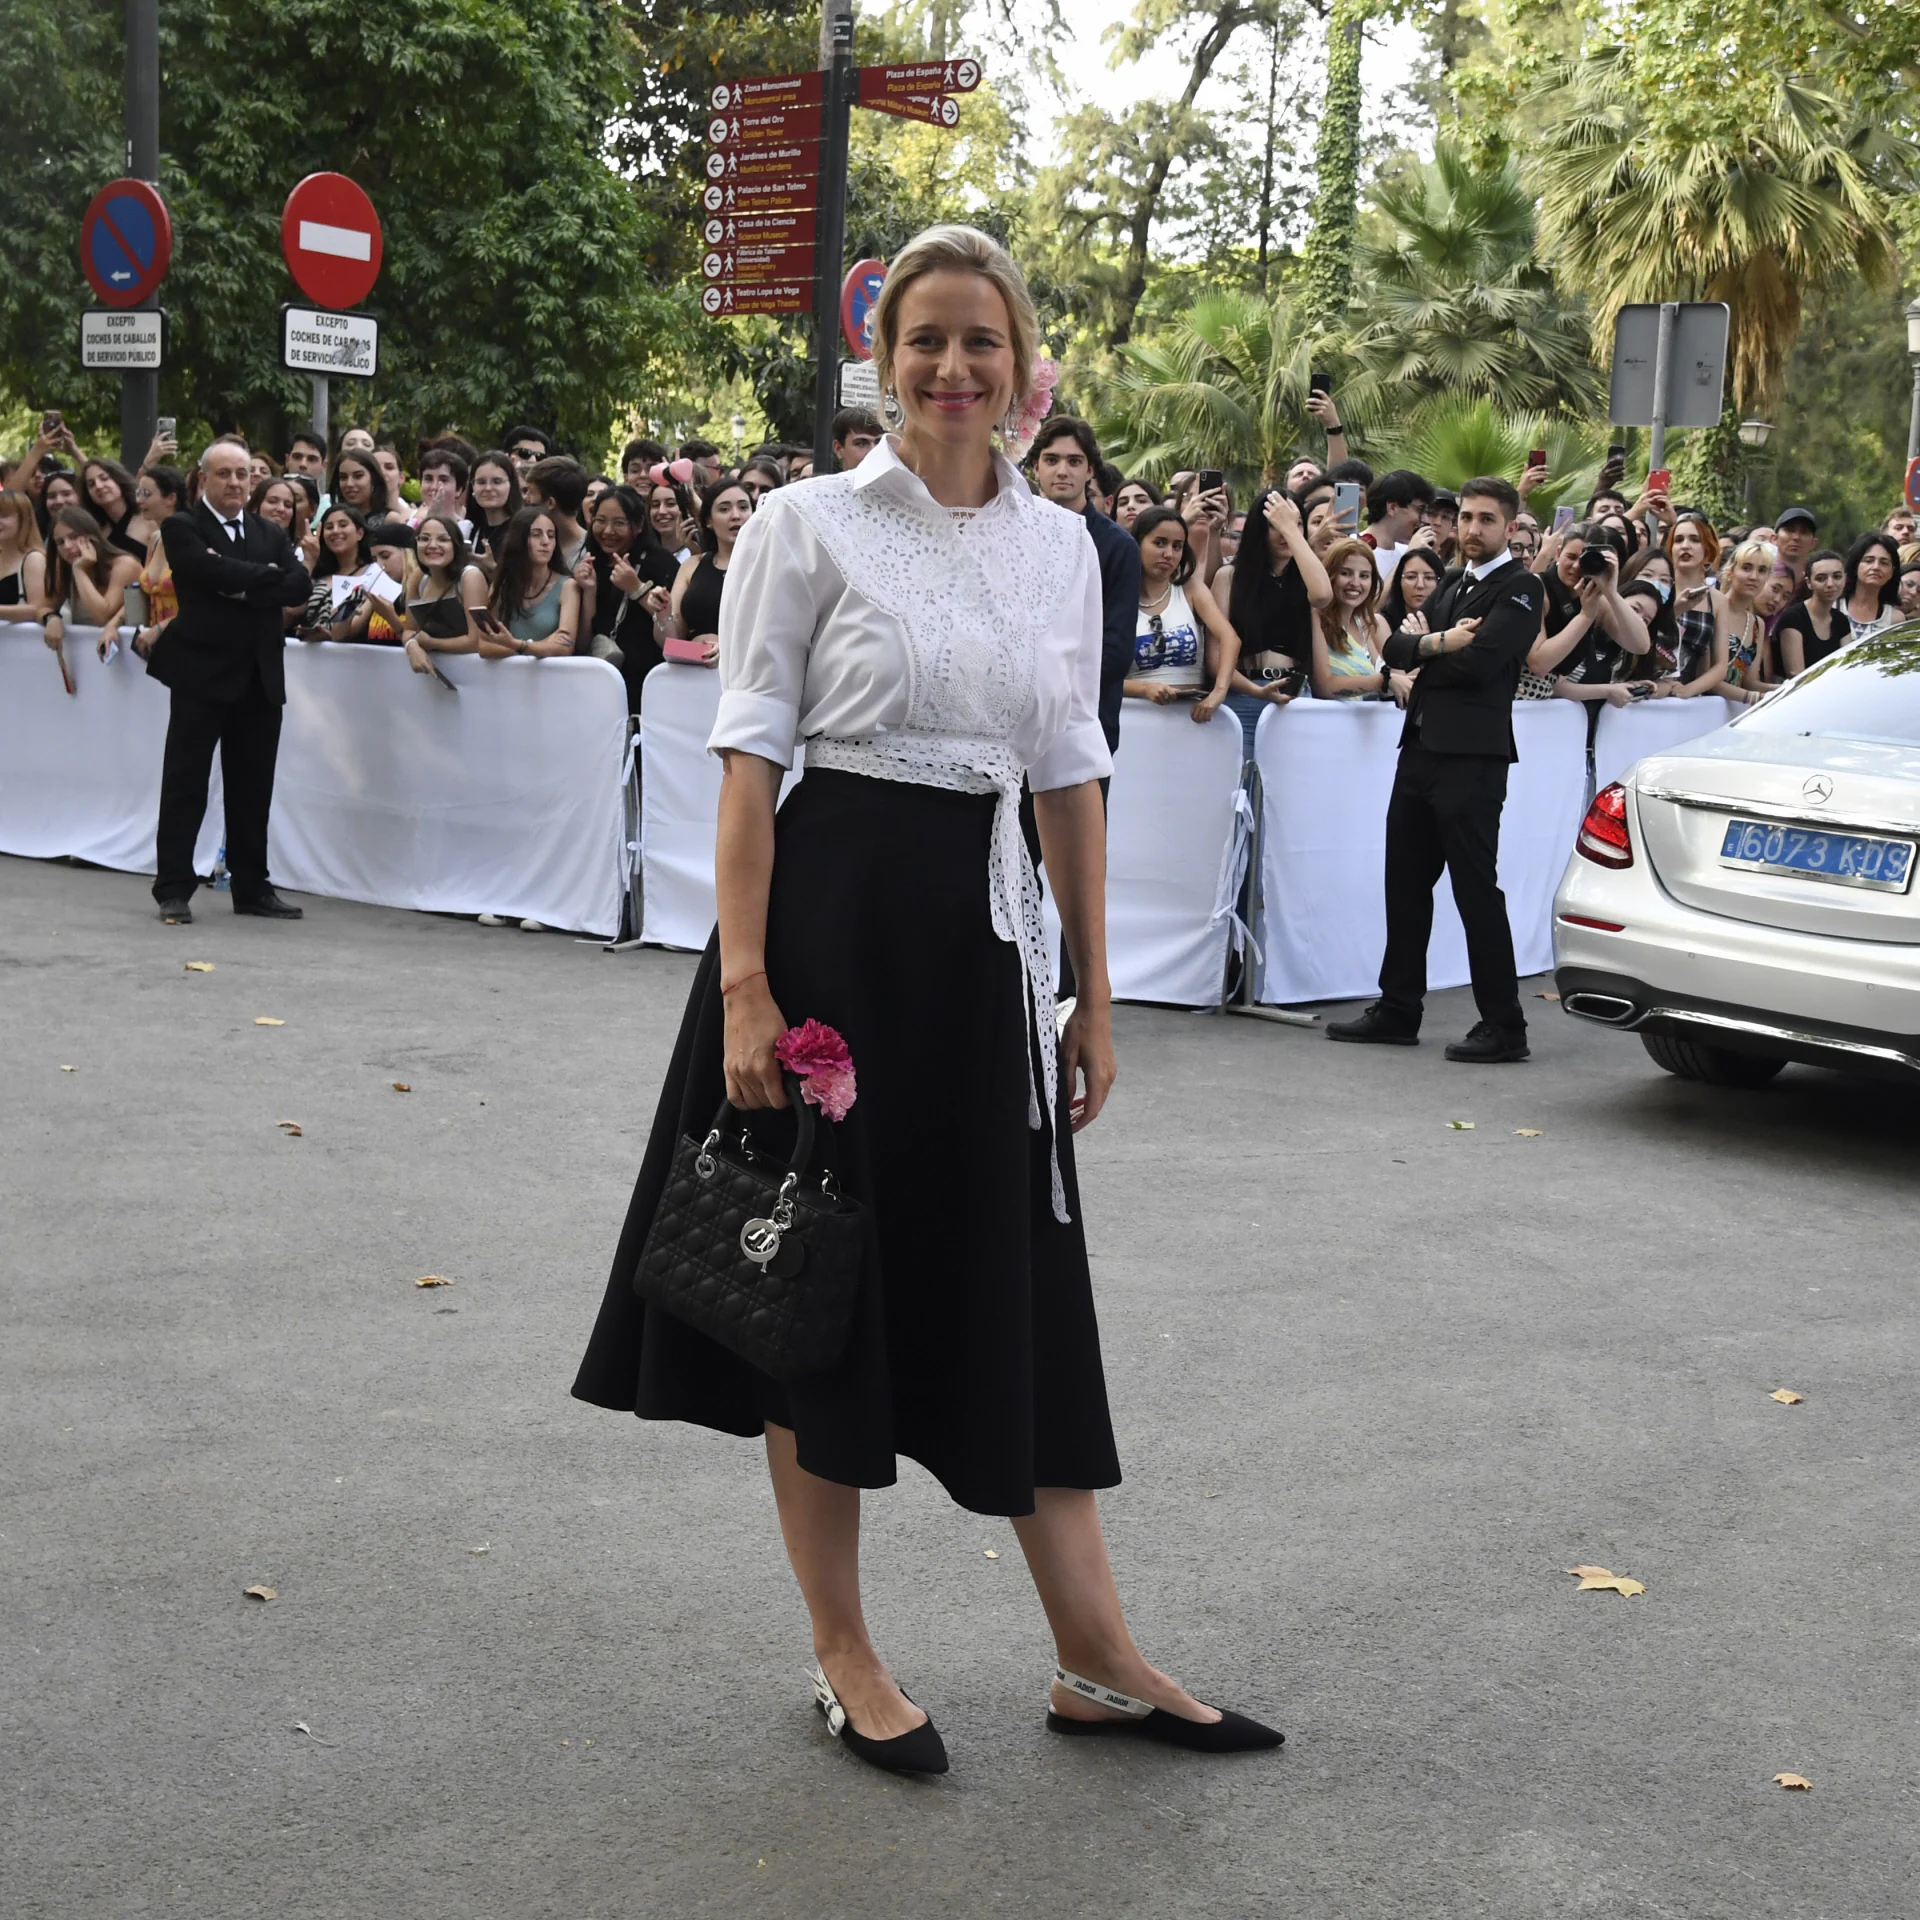 María de León. La experta en viajes y coach llevó también flores en la cabeza, como Chiara Ferragni, para asistir al desfile en su ciudad natal.